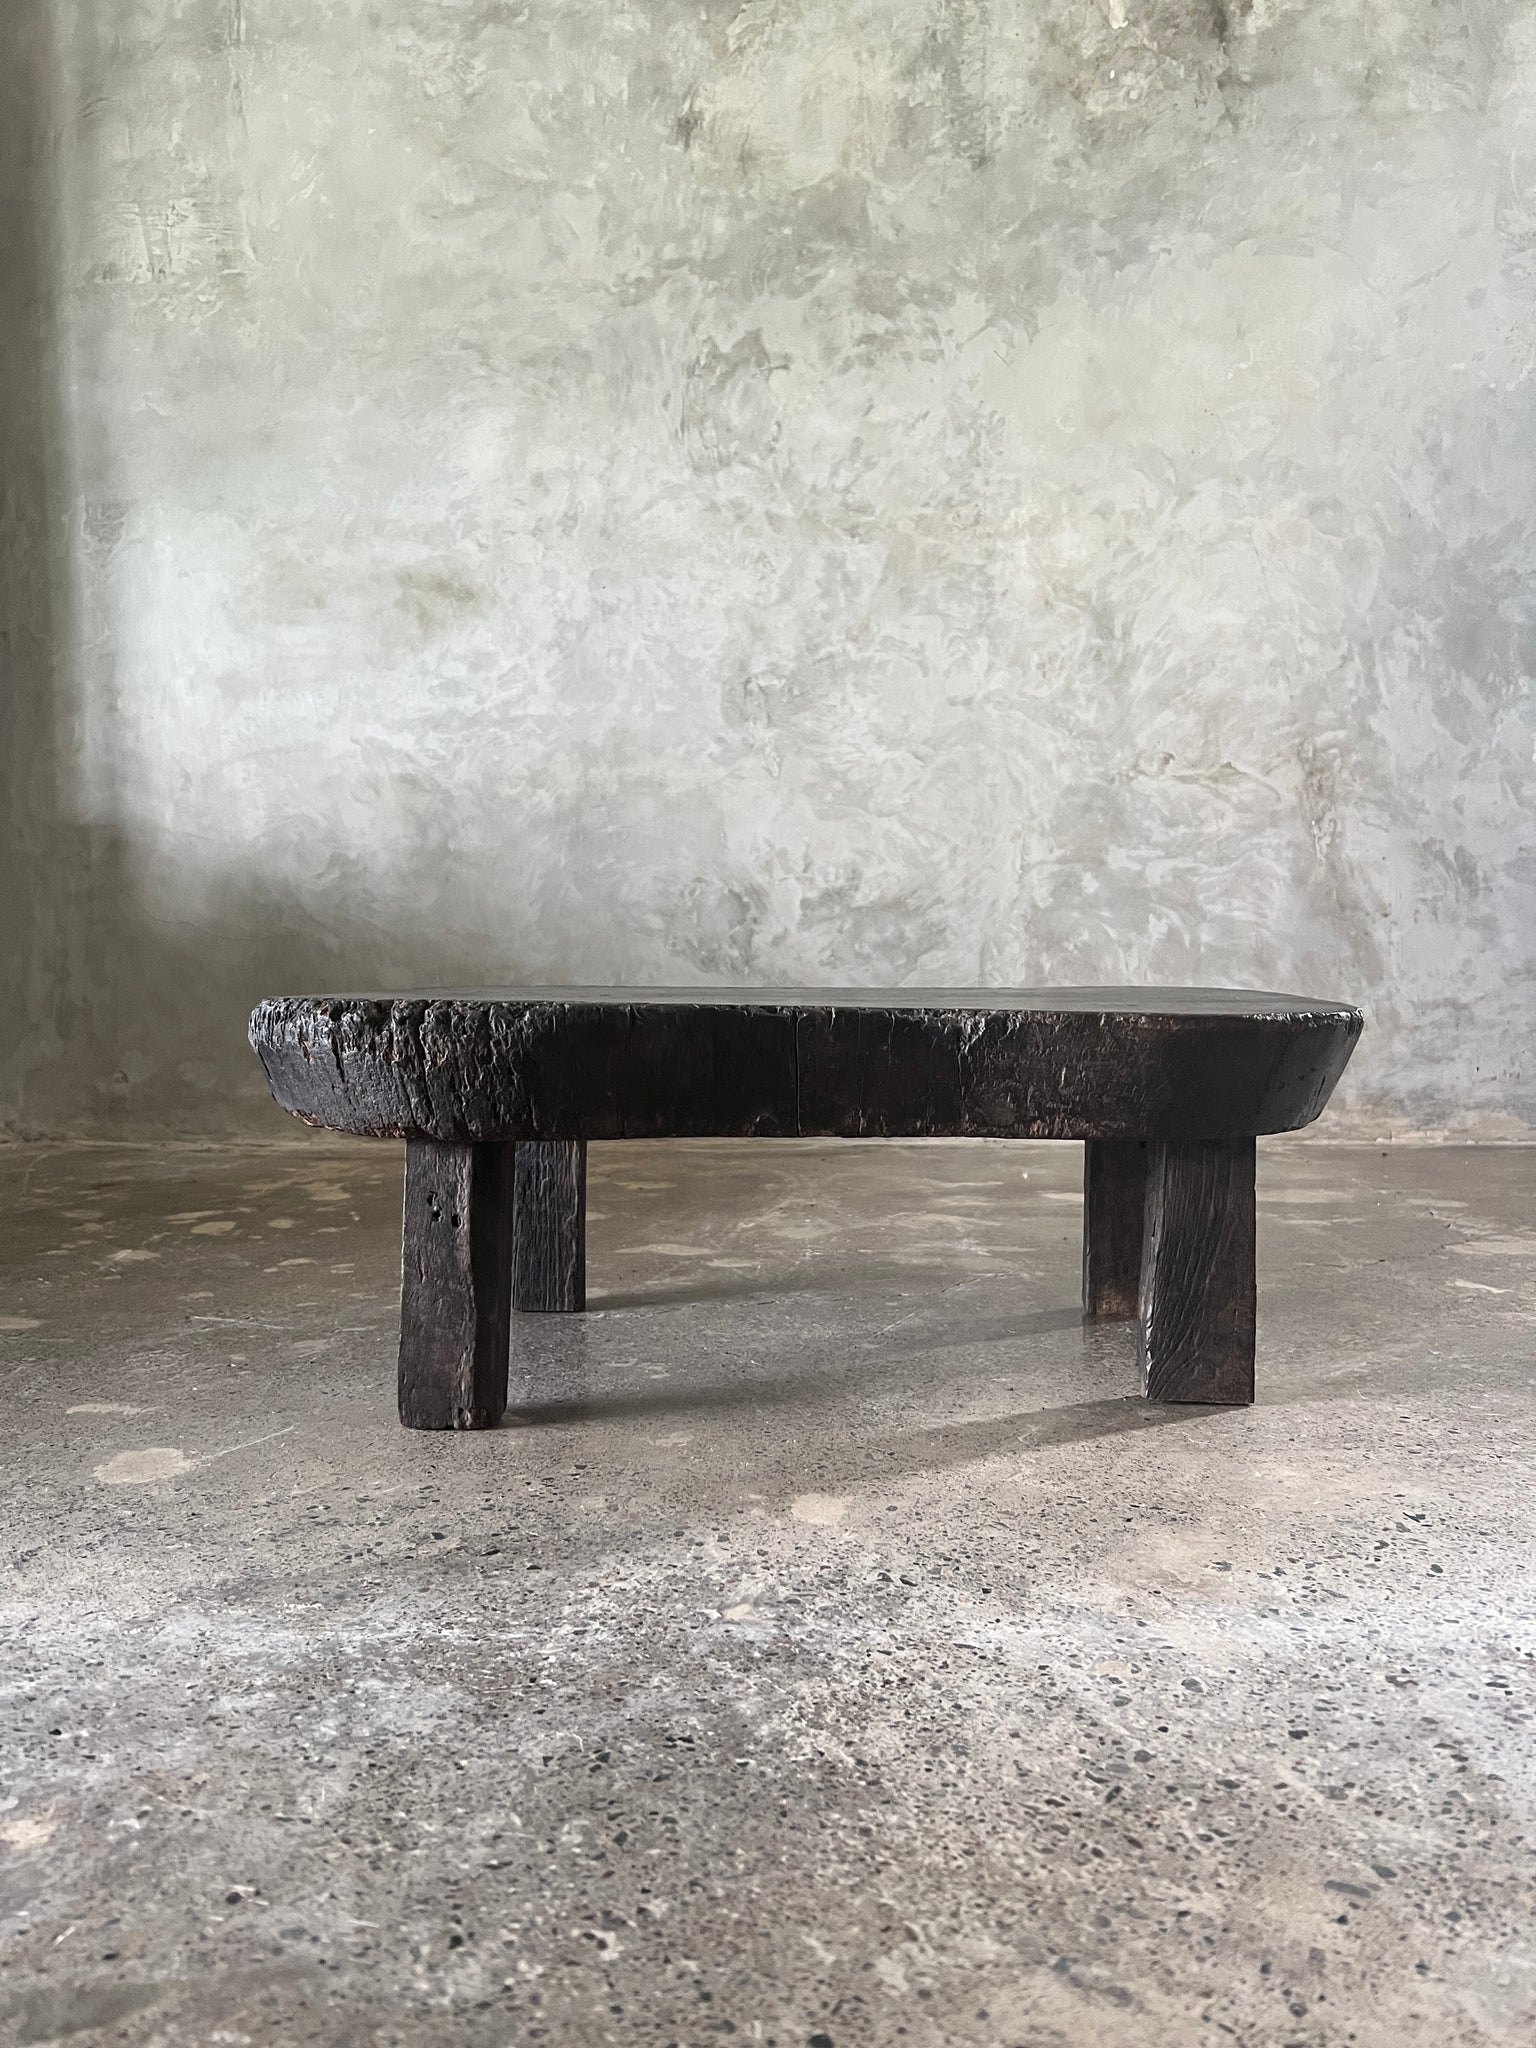 Petite table basse ancienne en bois asiatique de style japonisant plateau en forme de rognon